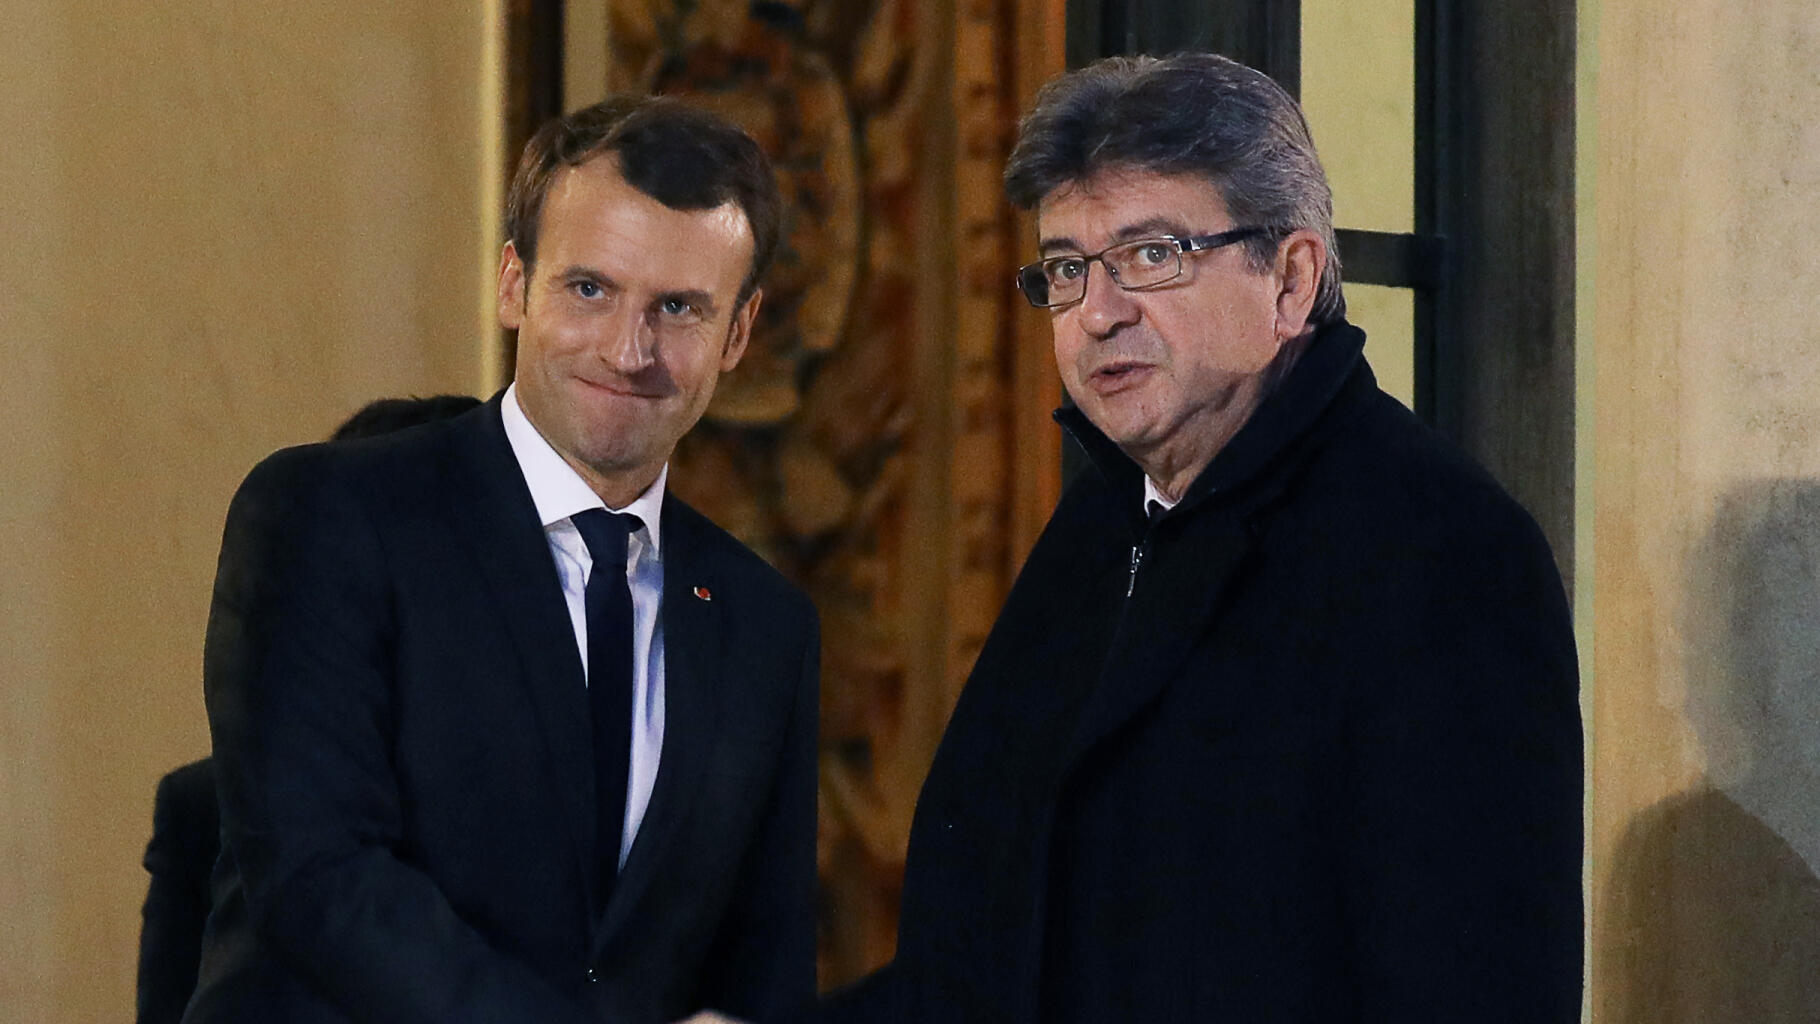 Macron et Mélenchon ont reçu ce même prix du sexisme en politique